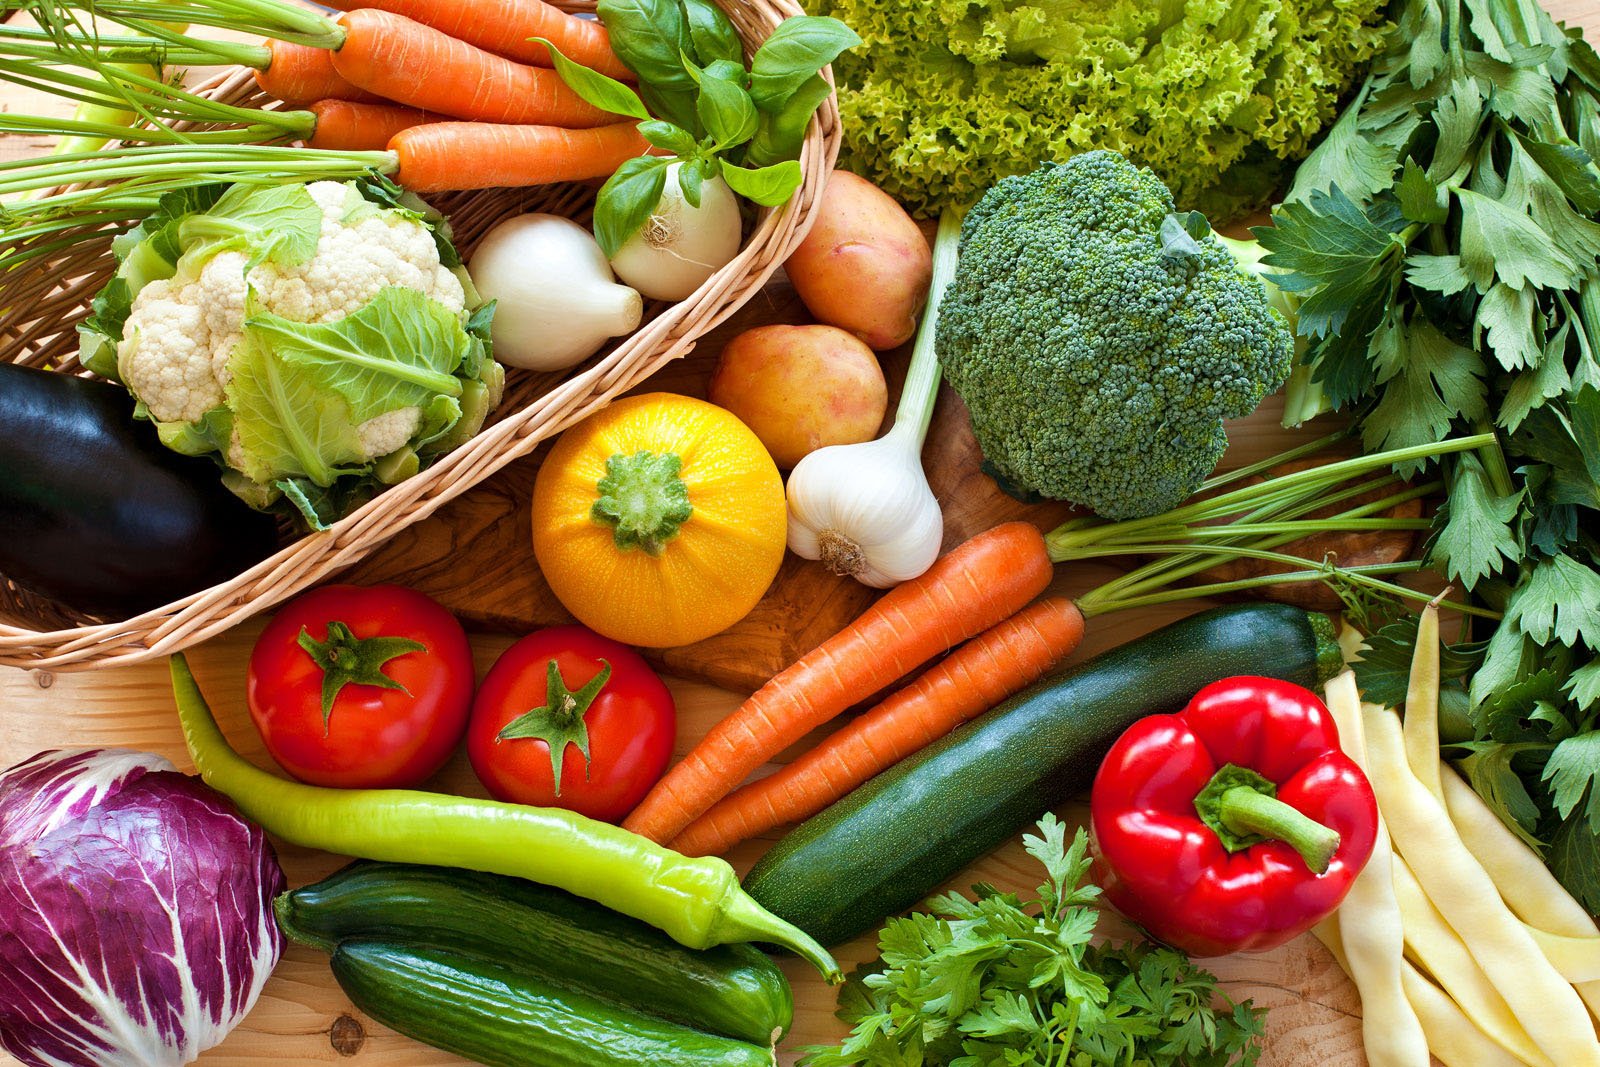 سبزیاں آپ کو صحت مند رہنے میں کس طرح مدد کرتی ہیں؟ ماہرین نے بتادیا